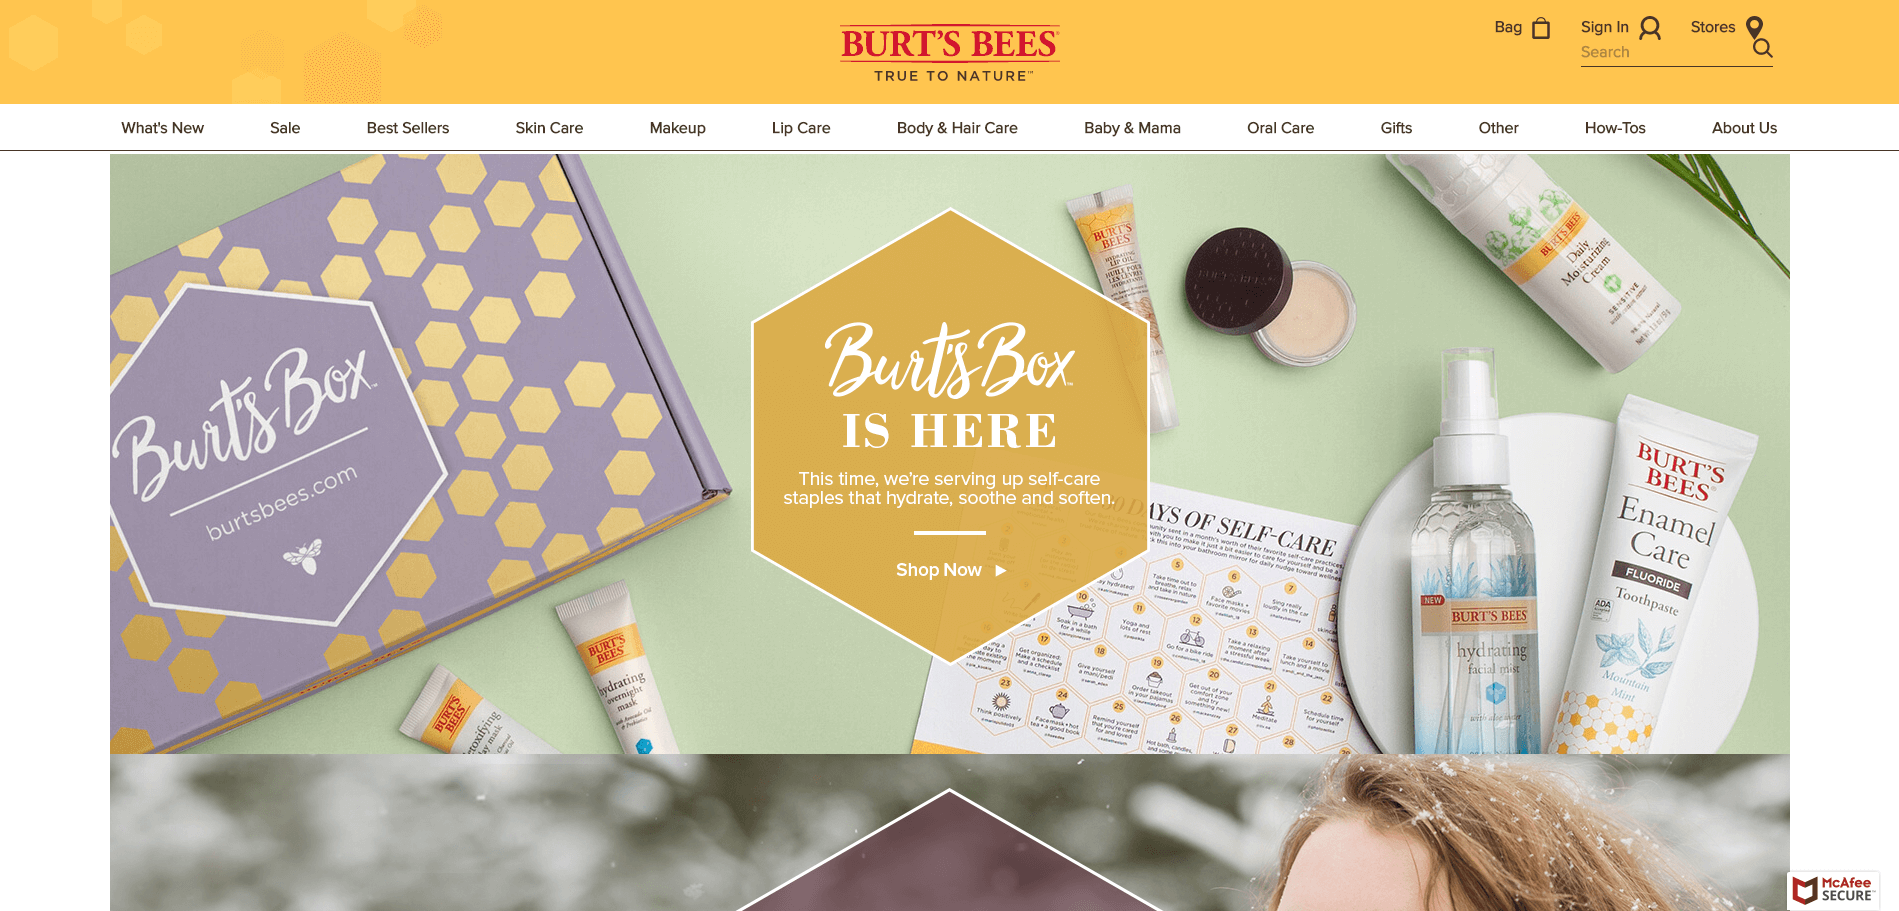 Burt's Bees官网 美国小蜜蜂 天然保养品的领导品牌